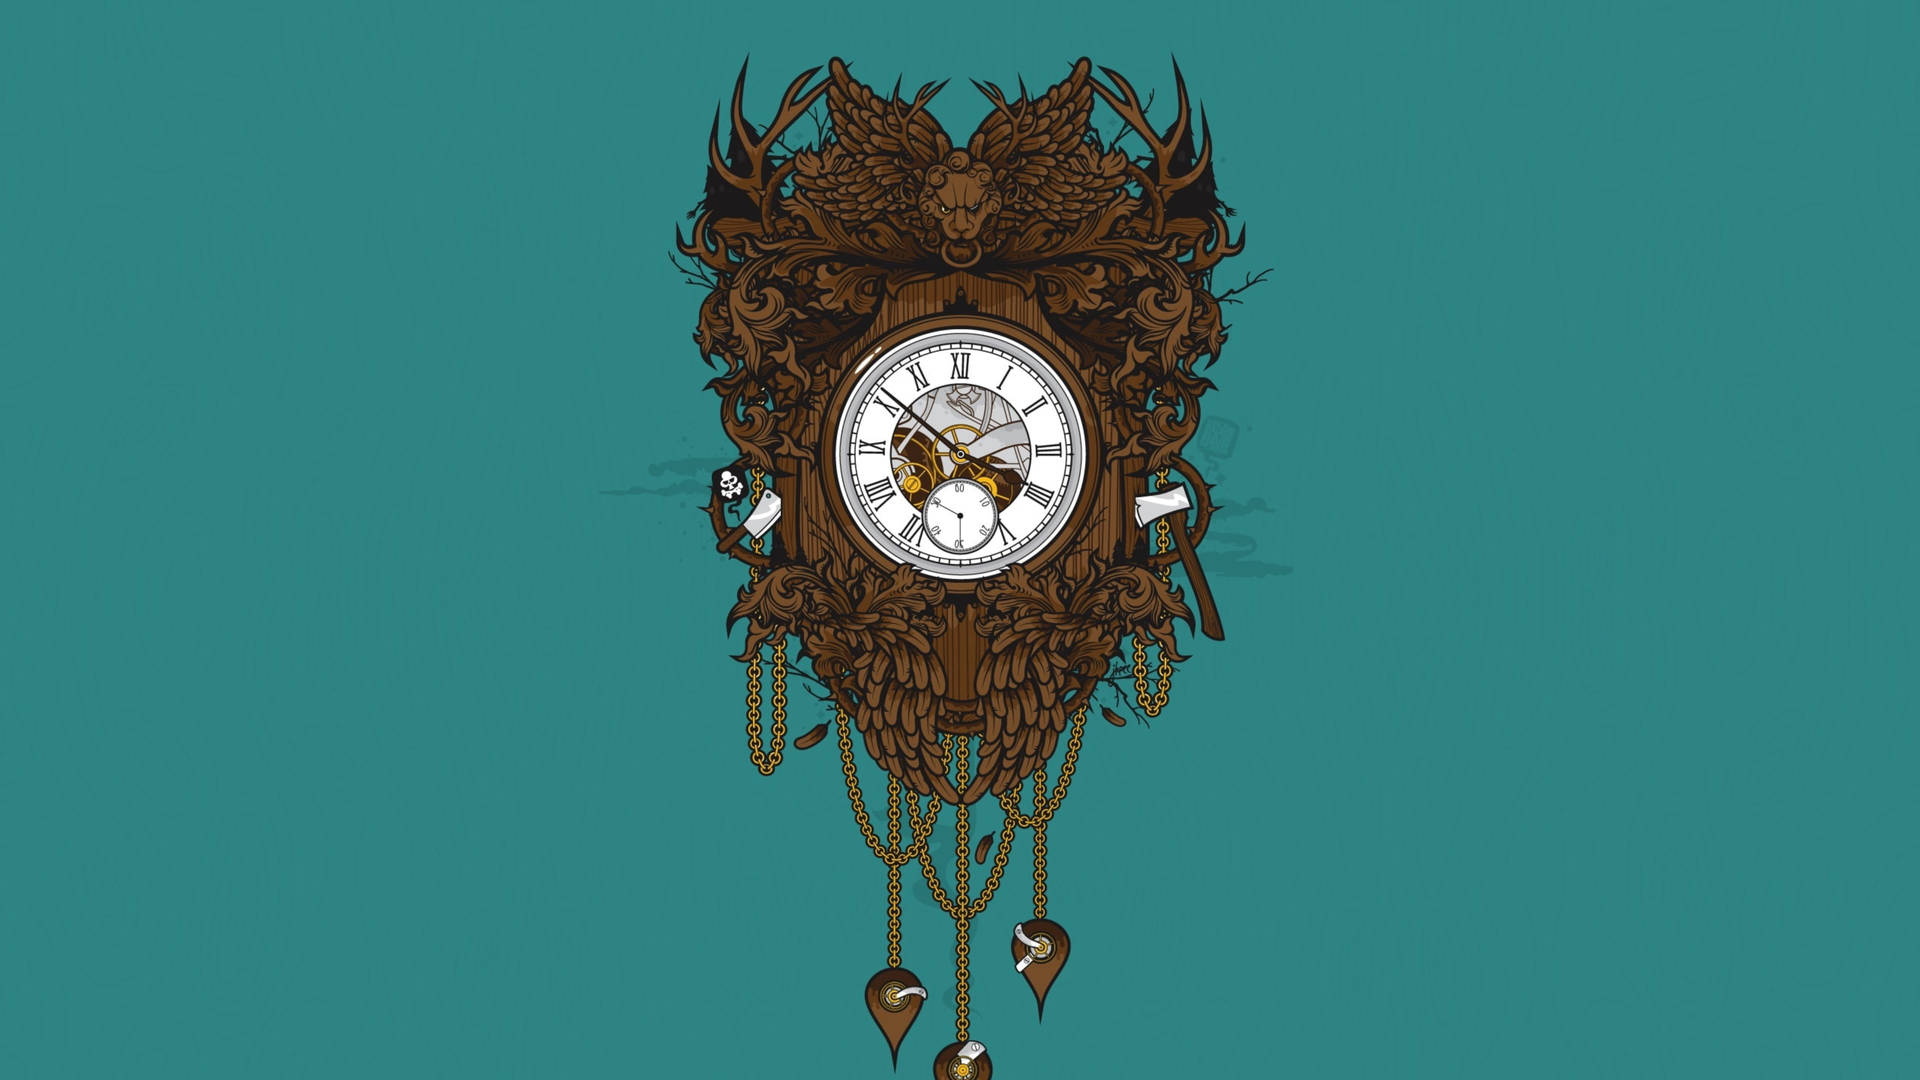 Relojde Pared Decorativo Victoriano Fondo de pantalla